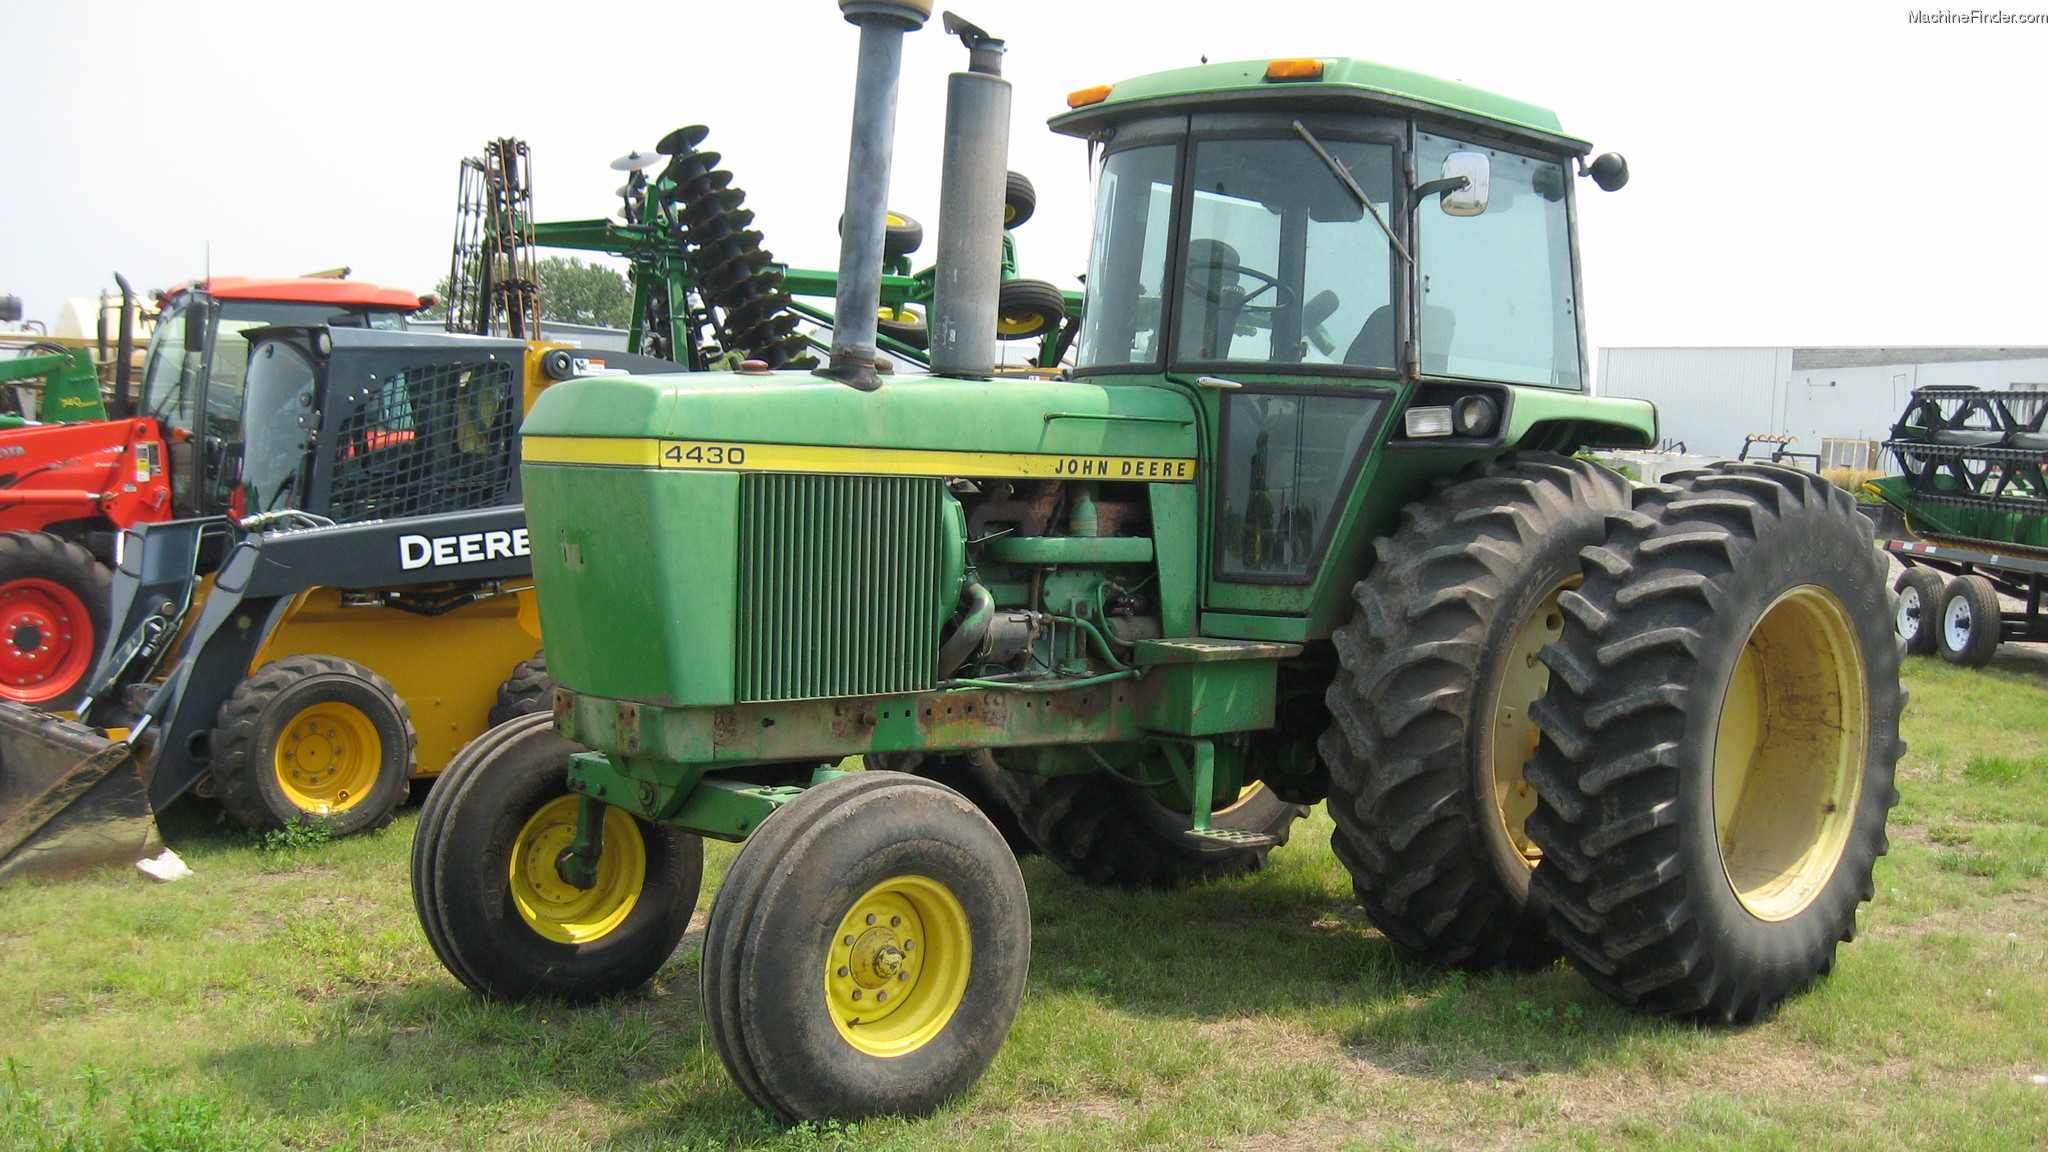 1974 John Deere 4430 Tractors Row Crop 100hp John Deere Machinefinder 6906